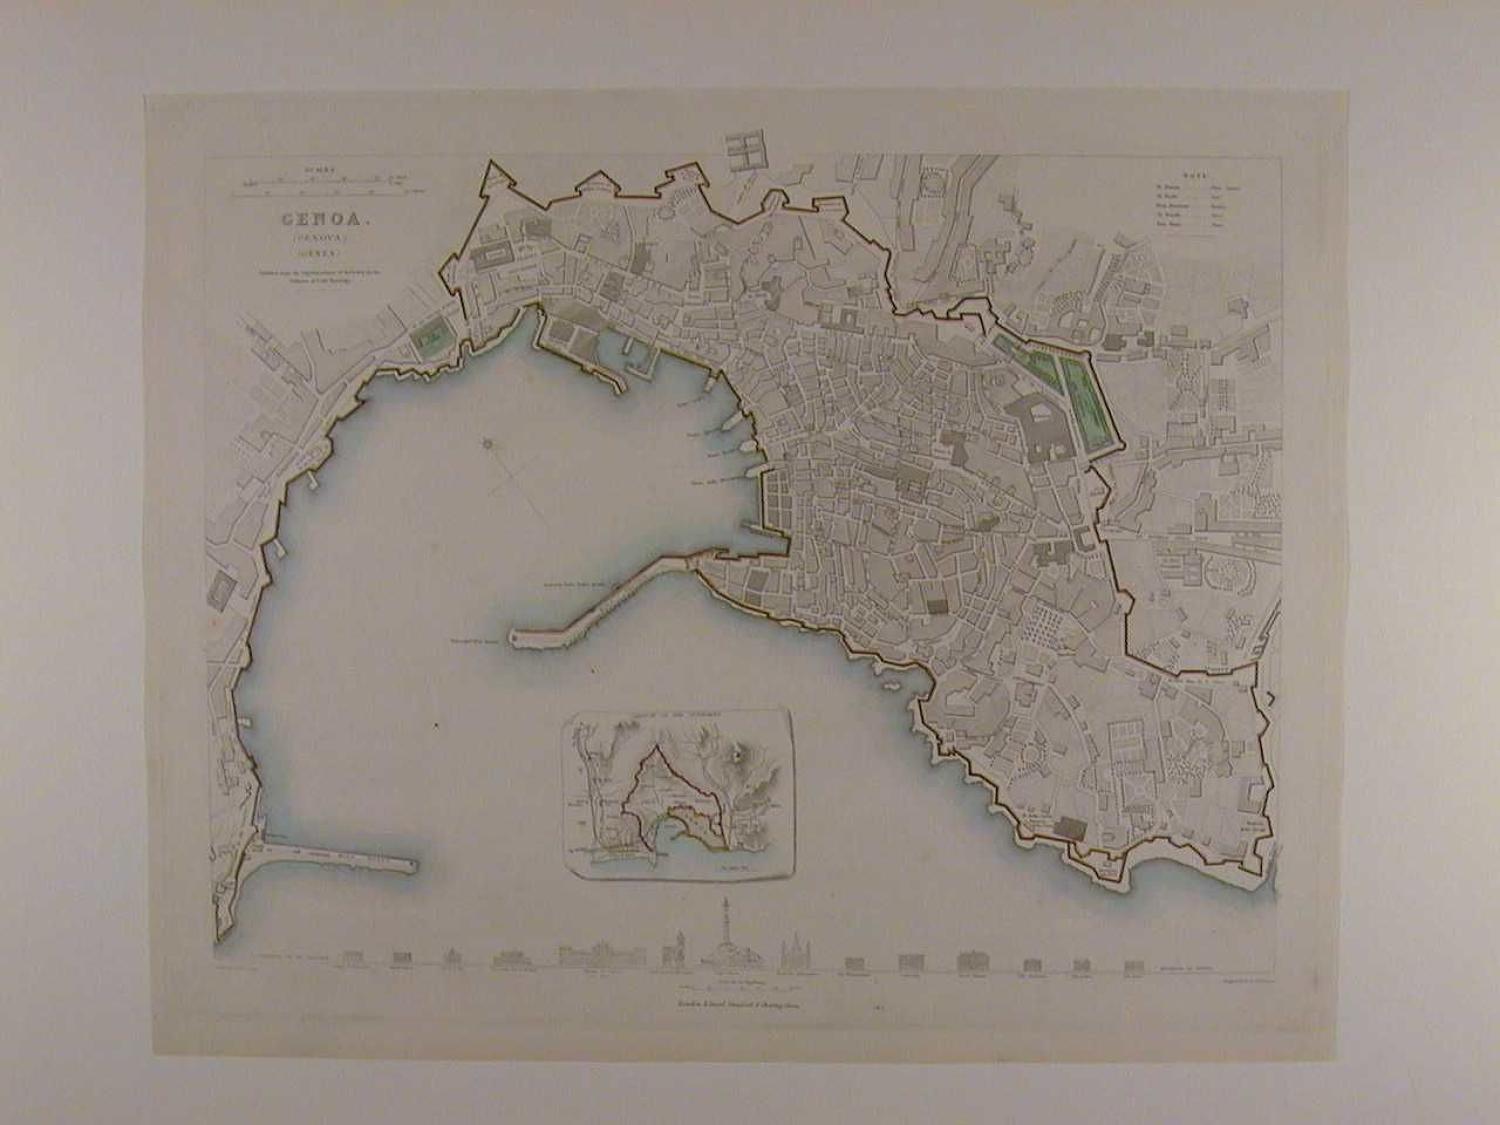 Genoa (Genova) by W. B Clarke